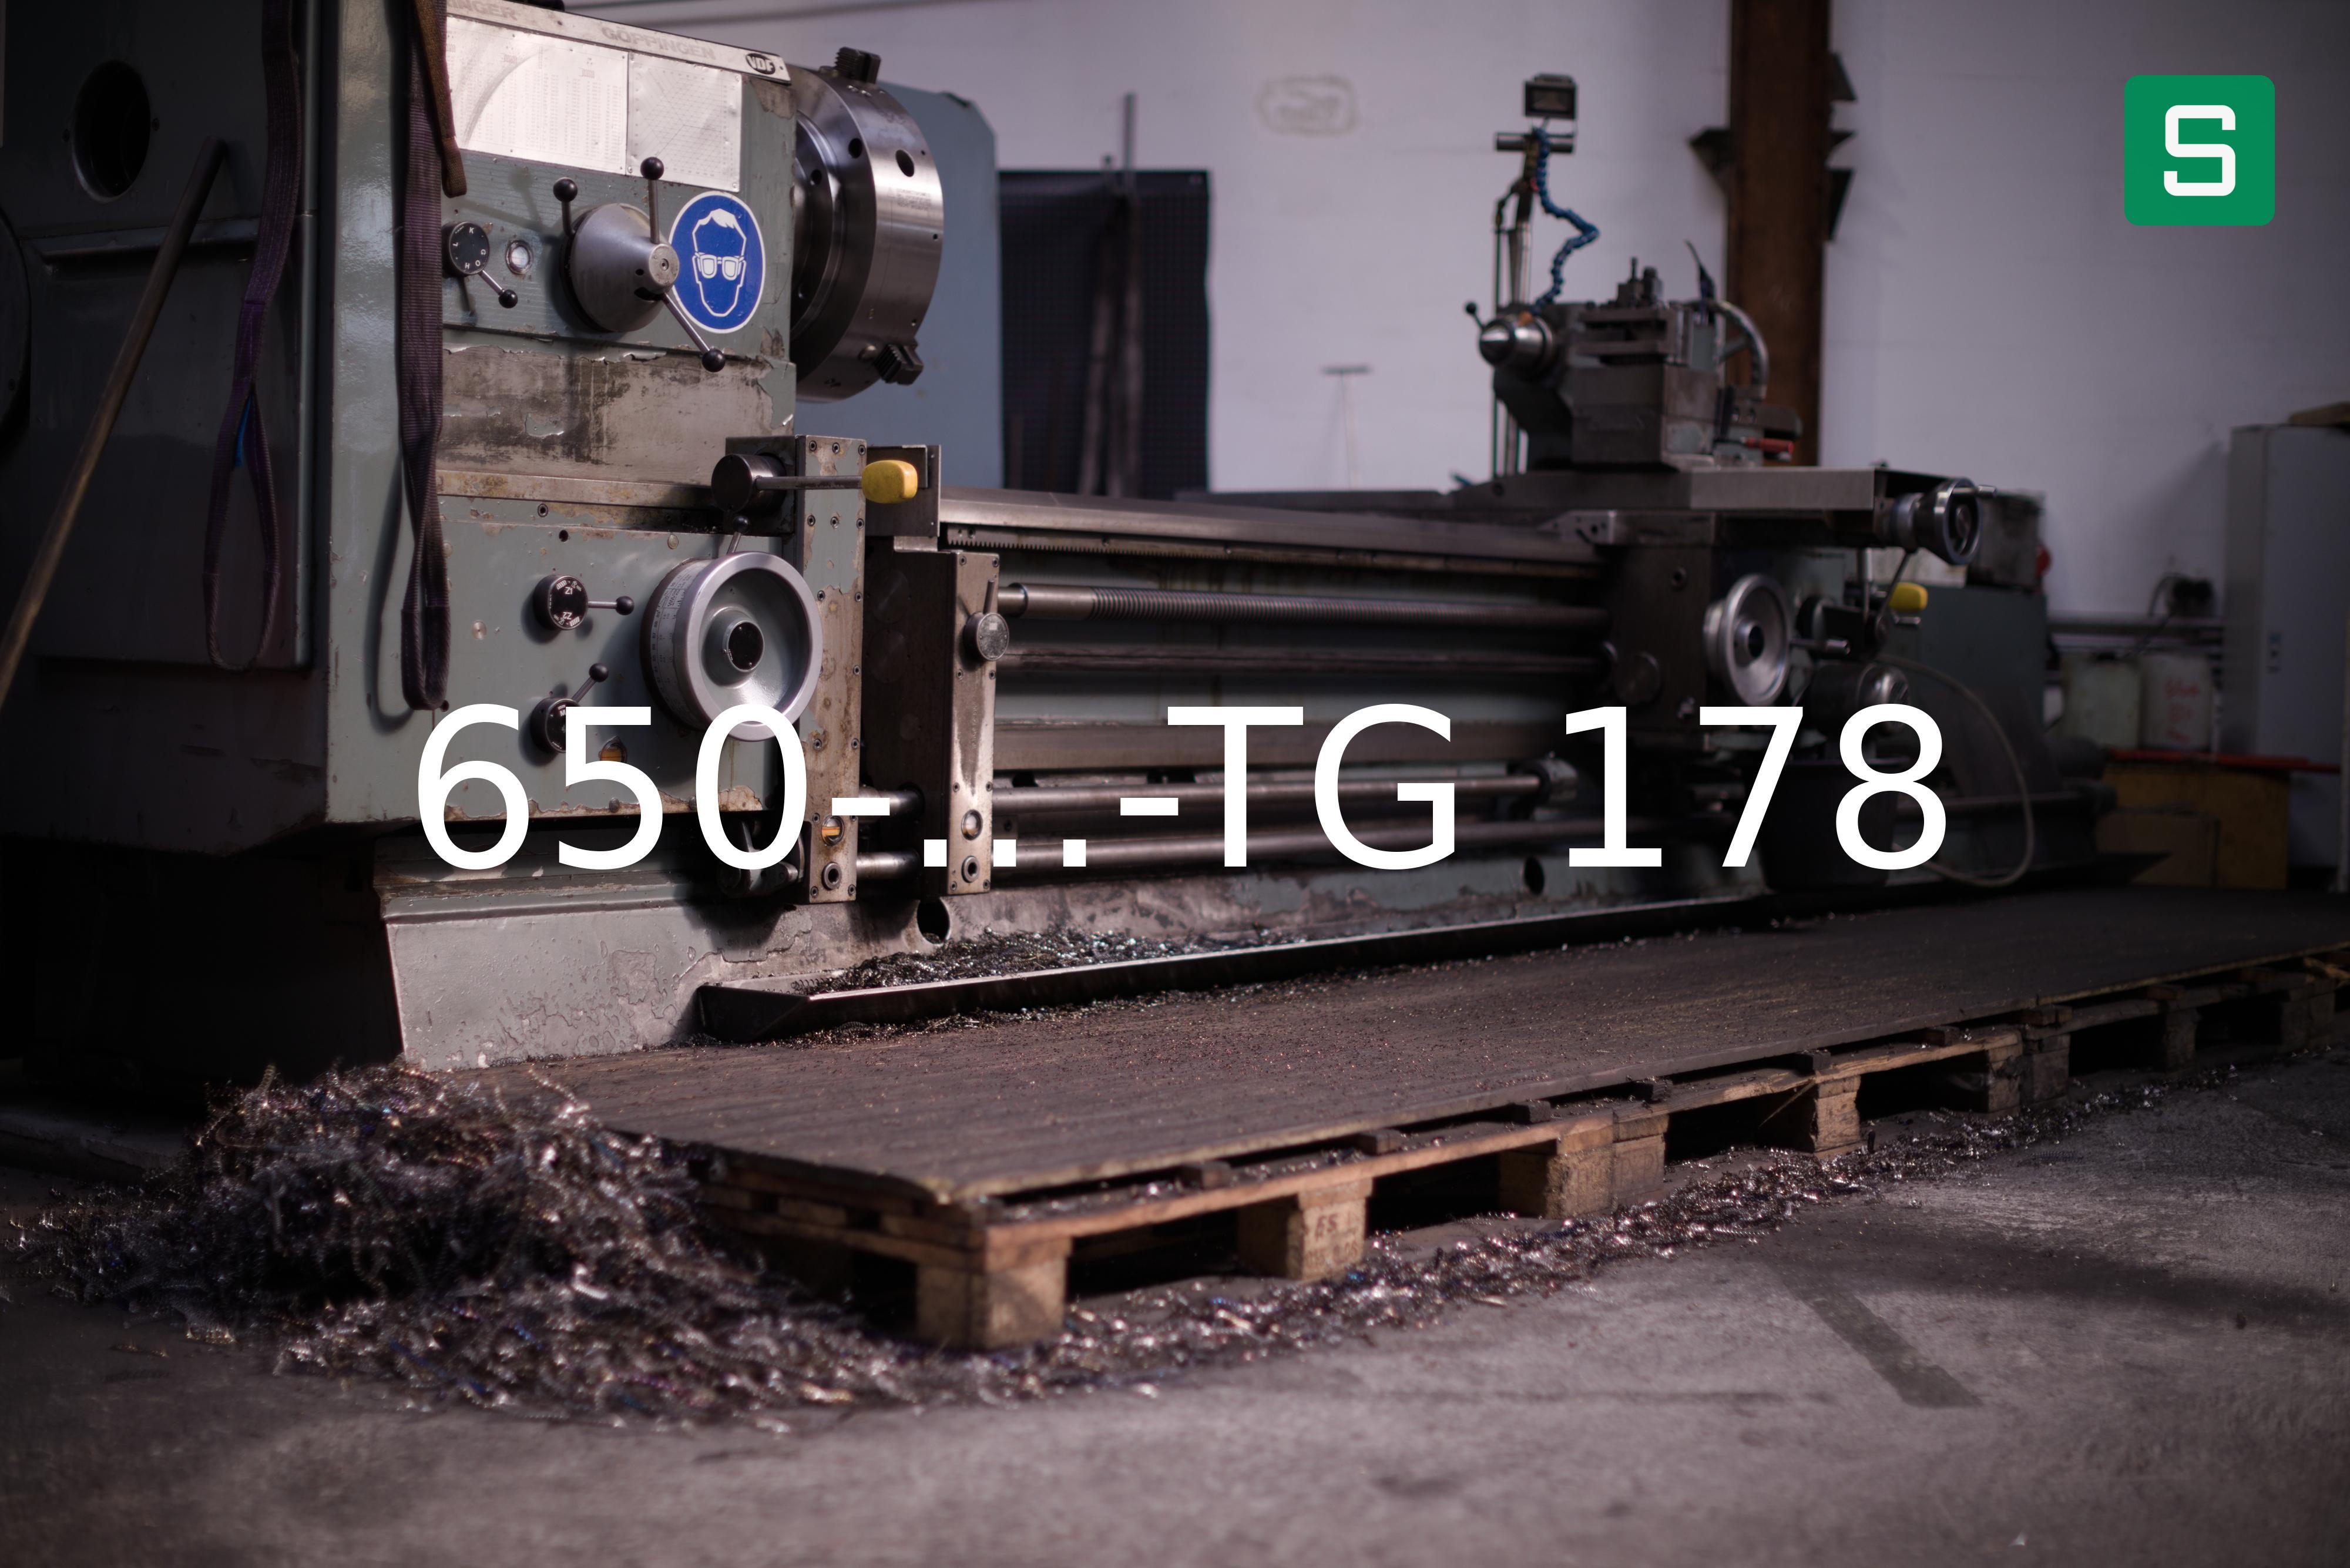 Steel Material: 650-...-TG 178